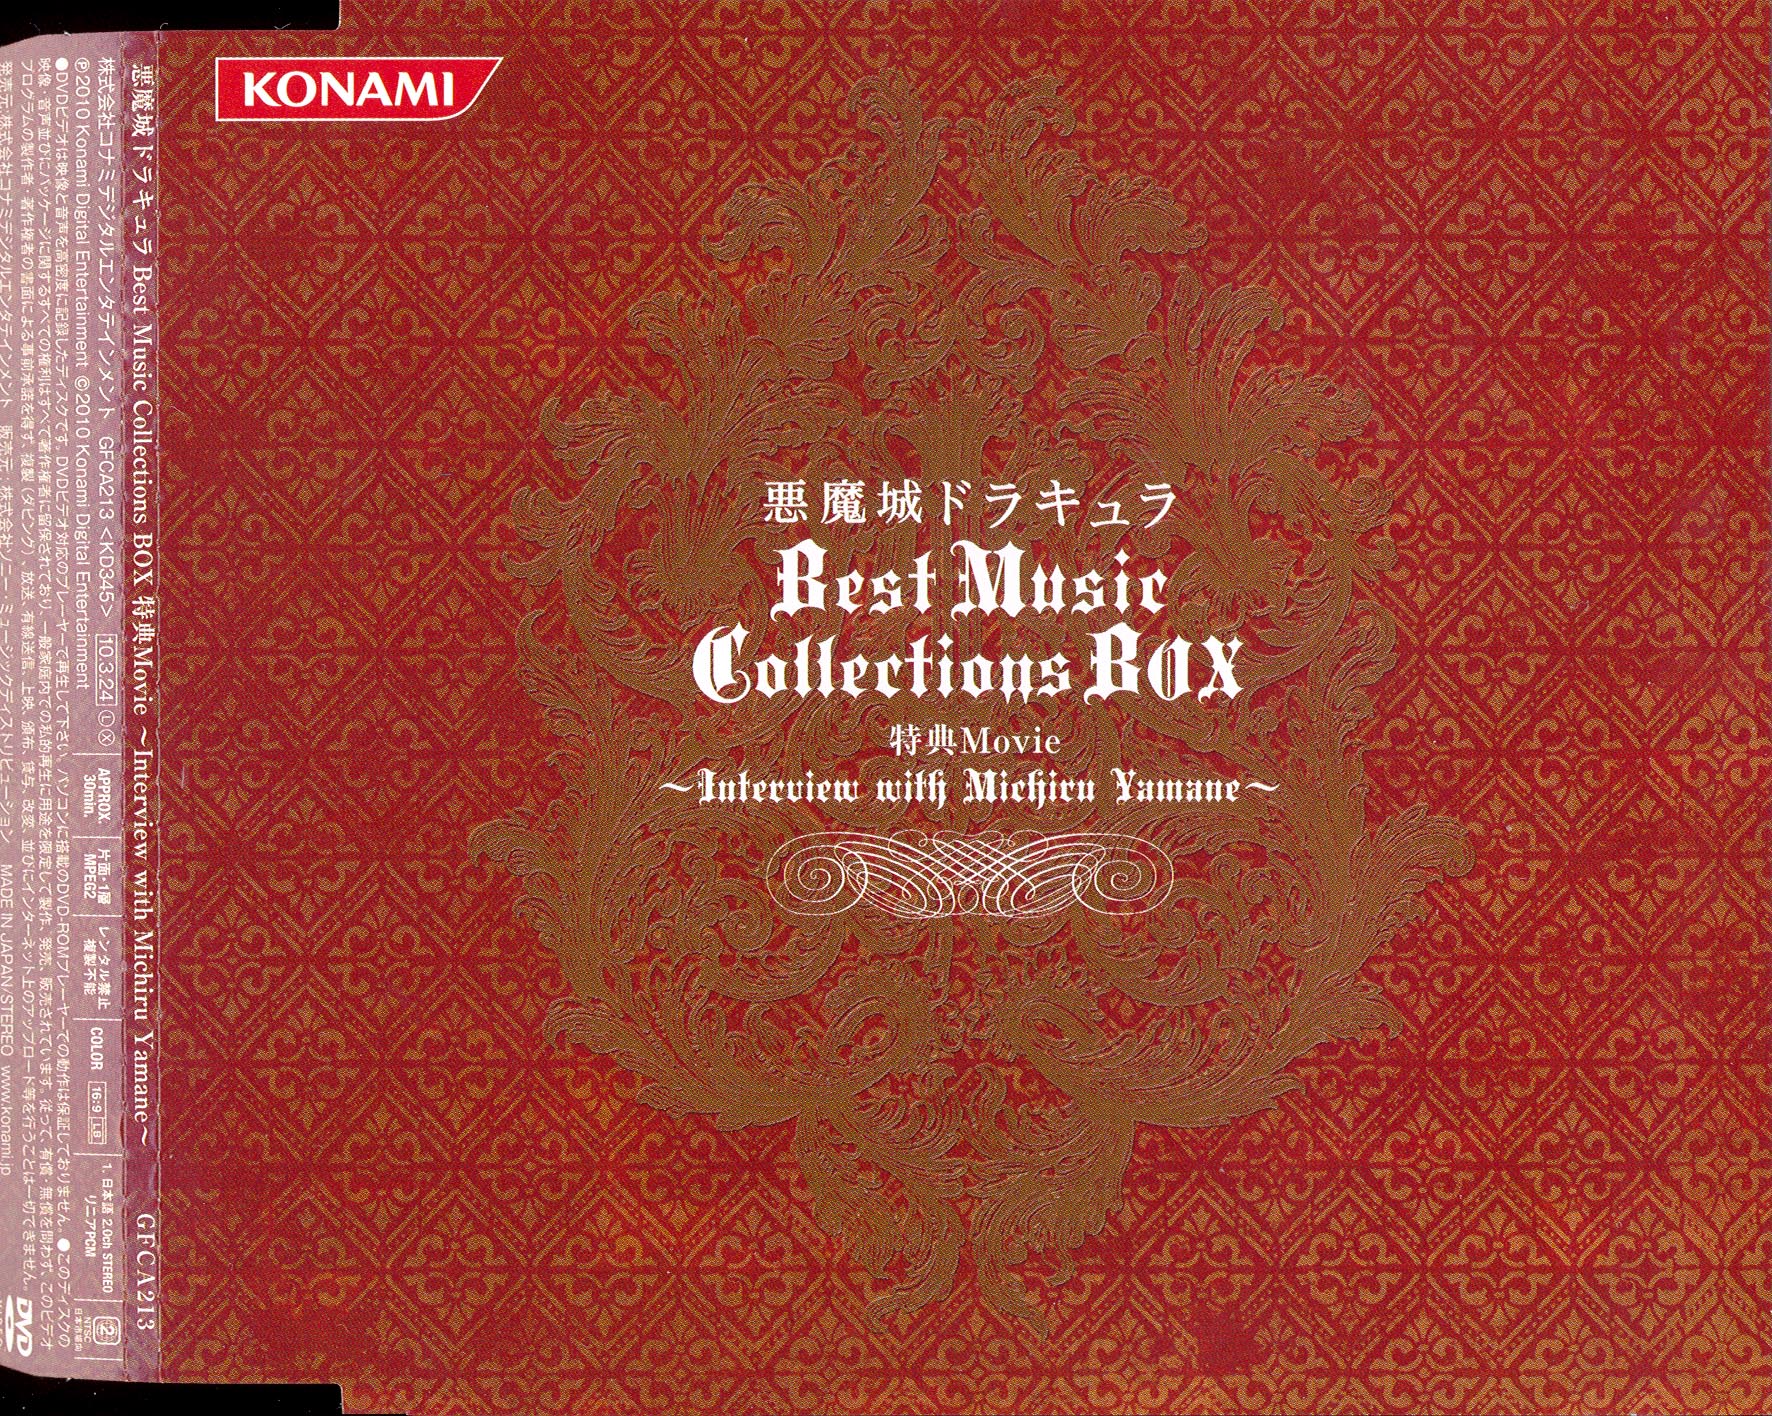 悪魔城ドラキュラ Best Music Collections BOX - アニメ